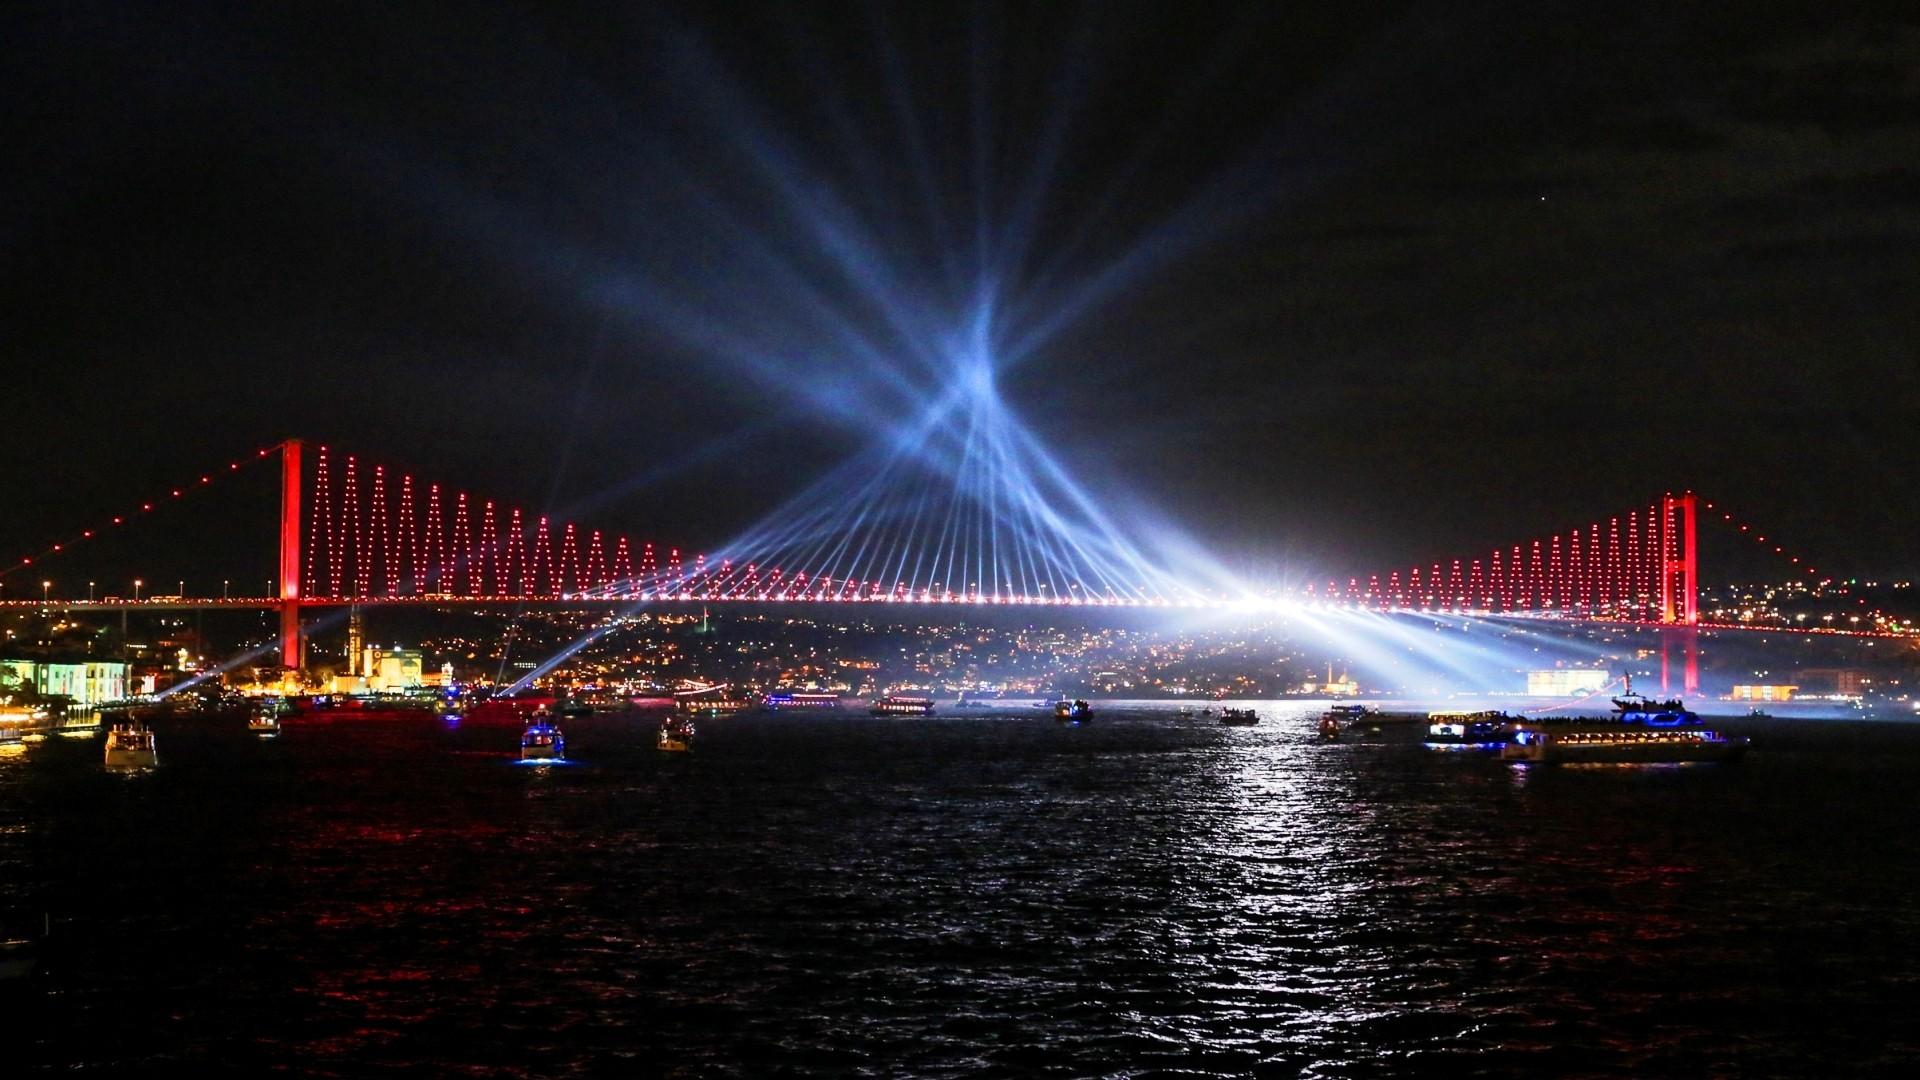 стамбульский мост через босфор ночью